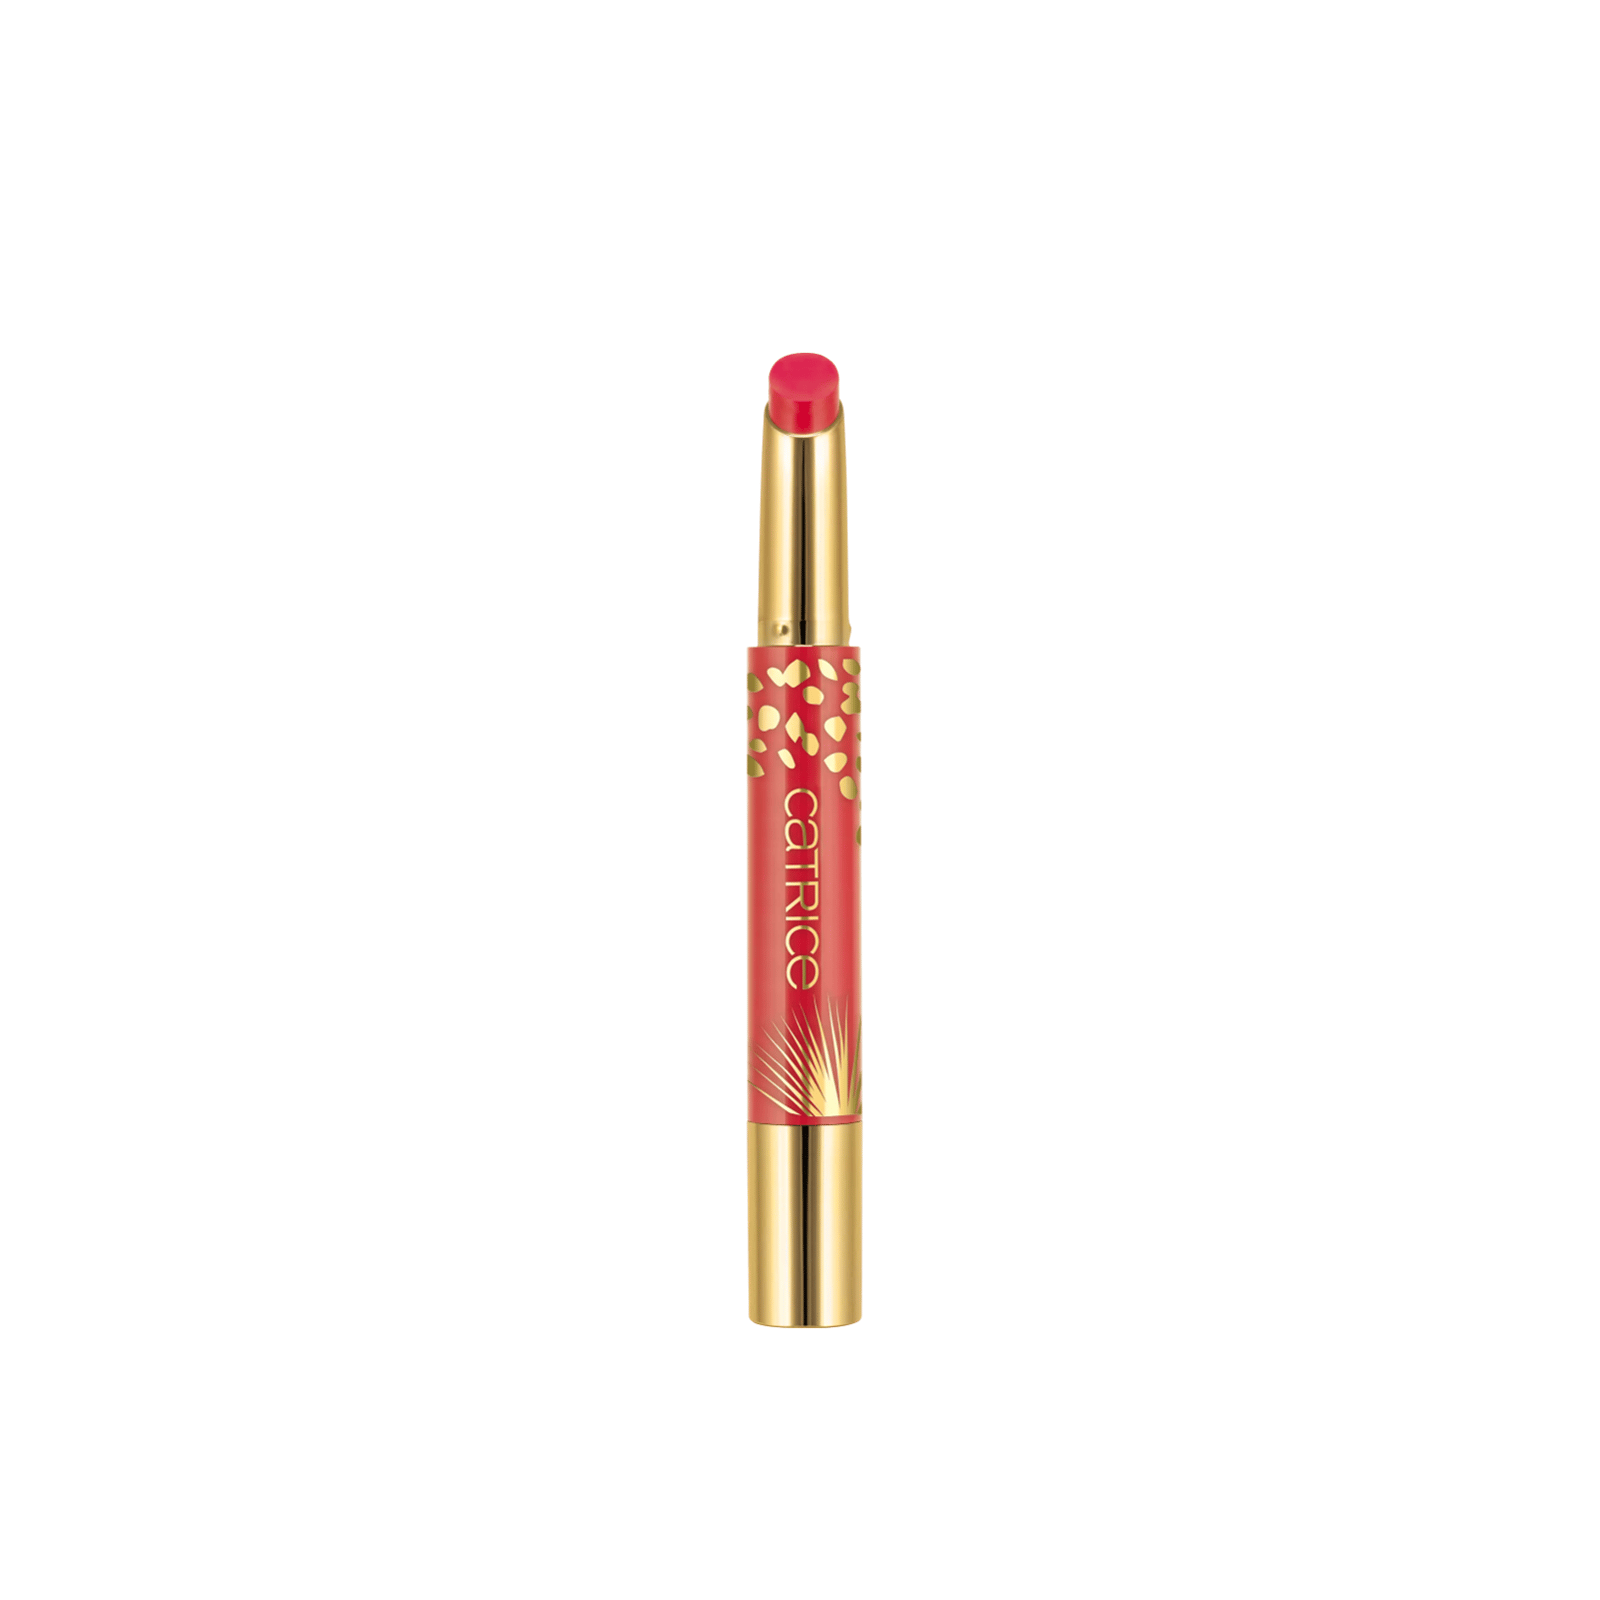 Buy Catrice Wild Escape High Shine Lipstick Pen · USA